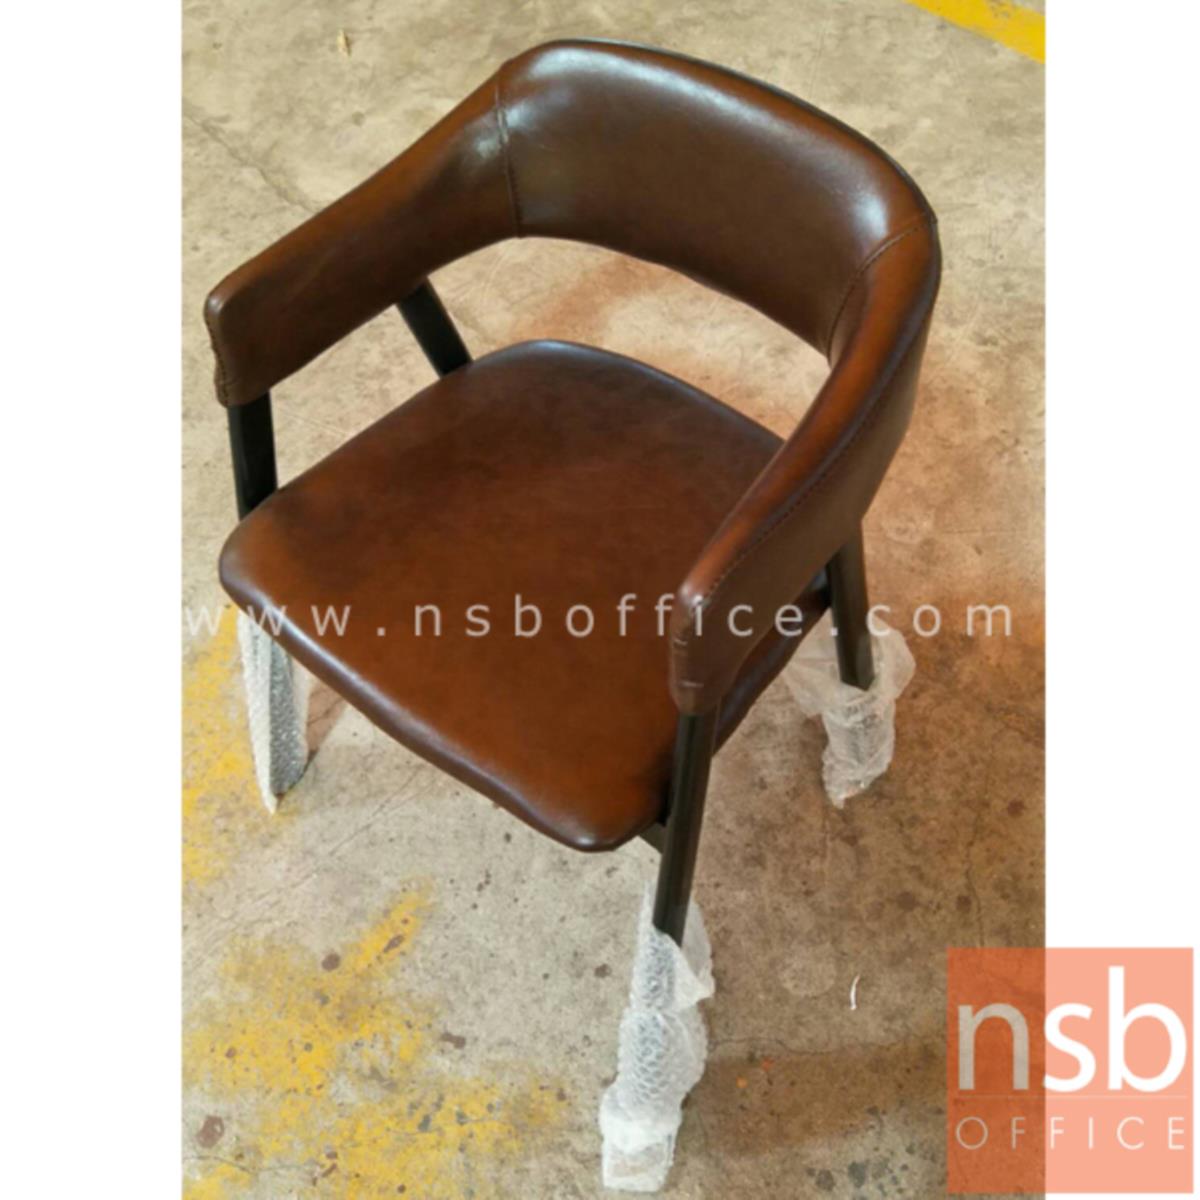 เก้าอี้โมเดิร์นหนังเทียม รุ่น Gable (เกเบิล) ขนาด 50W cm. โครงขาไม้